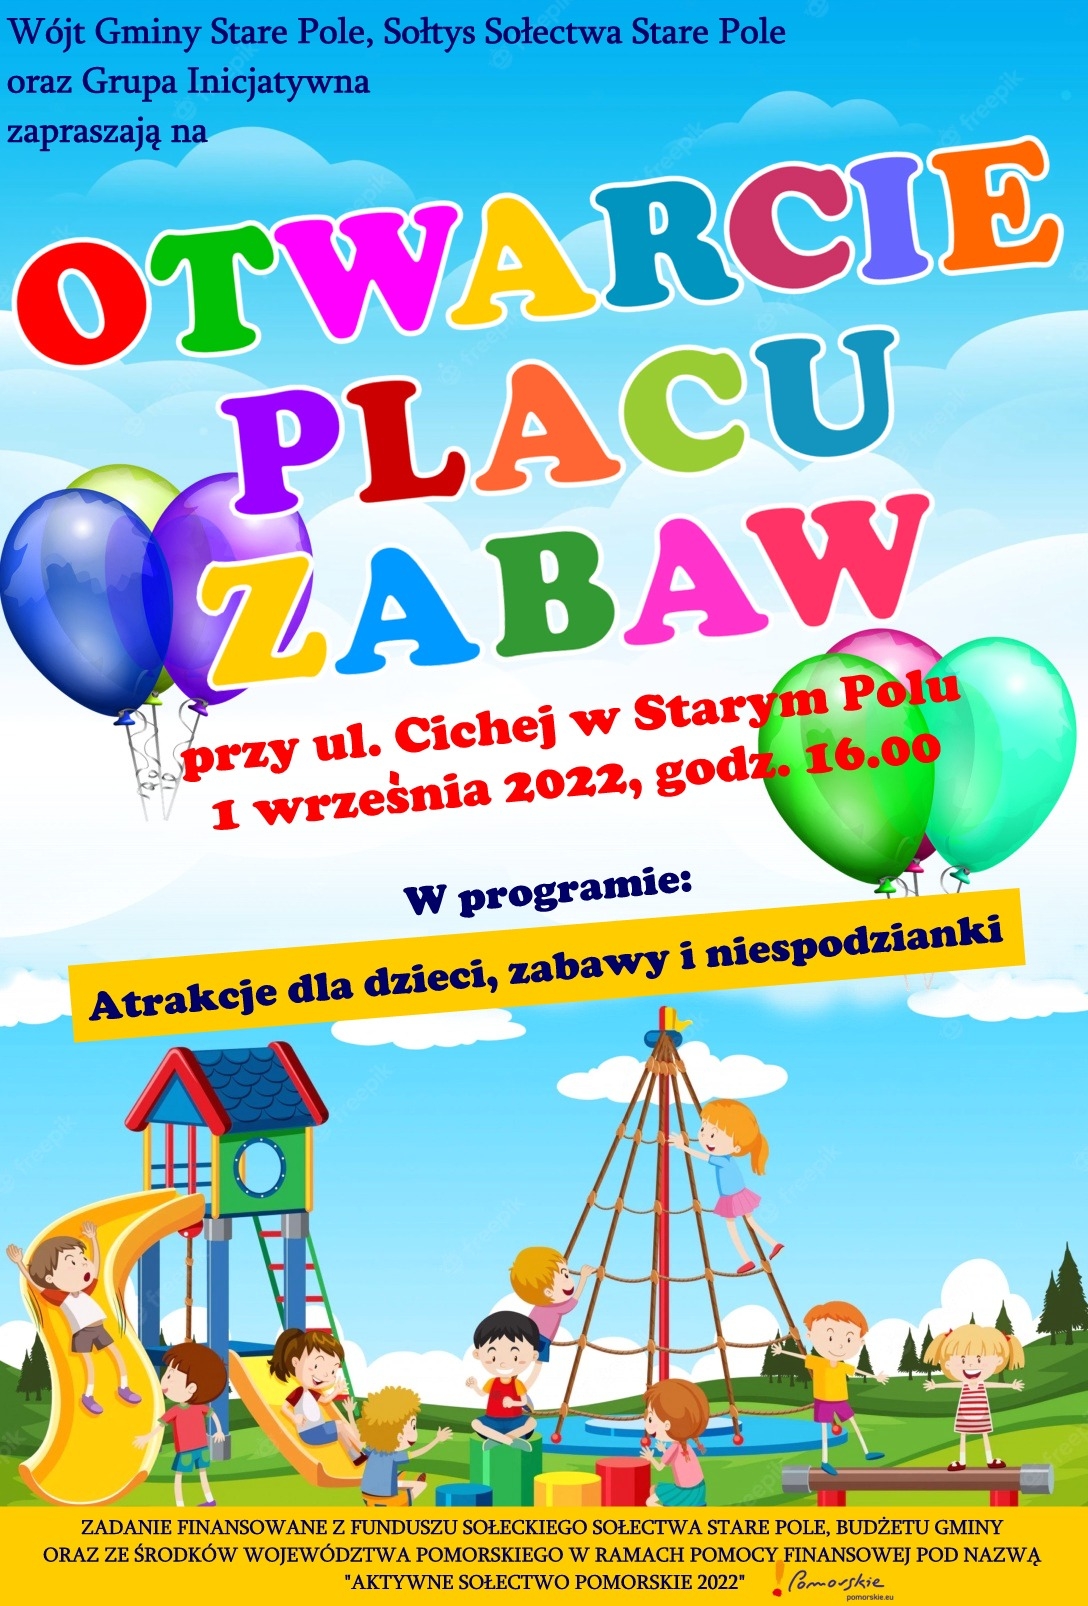 Plakat informujący o otwarciu placu zabaw w Starym Polu